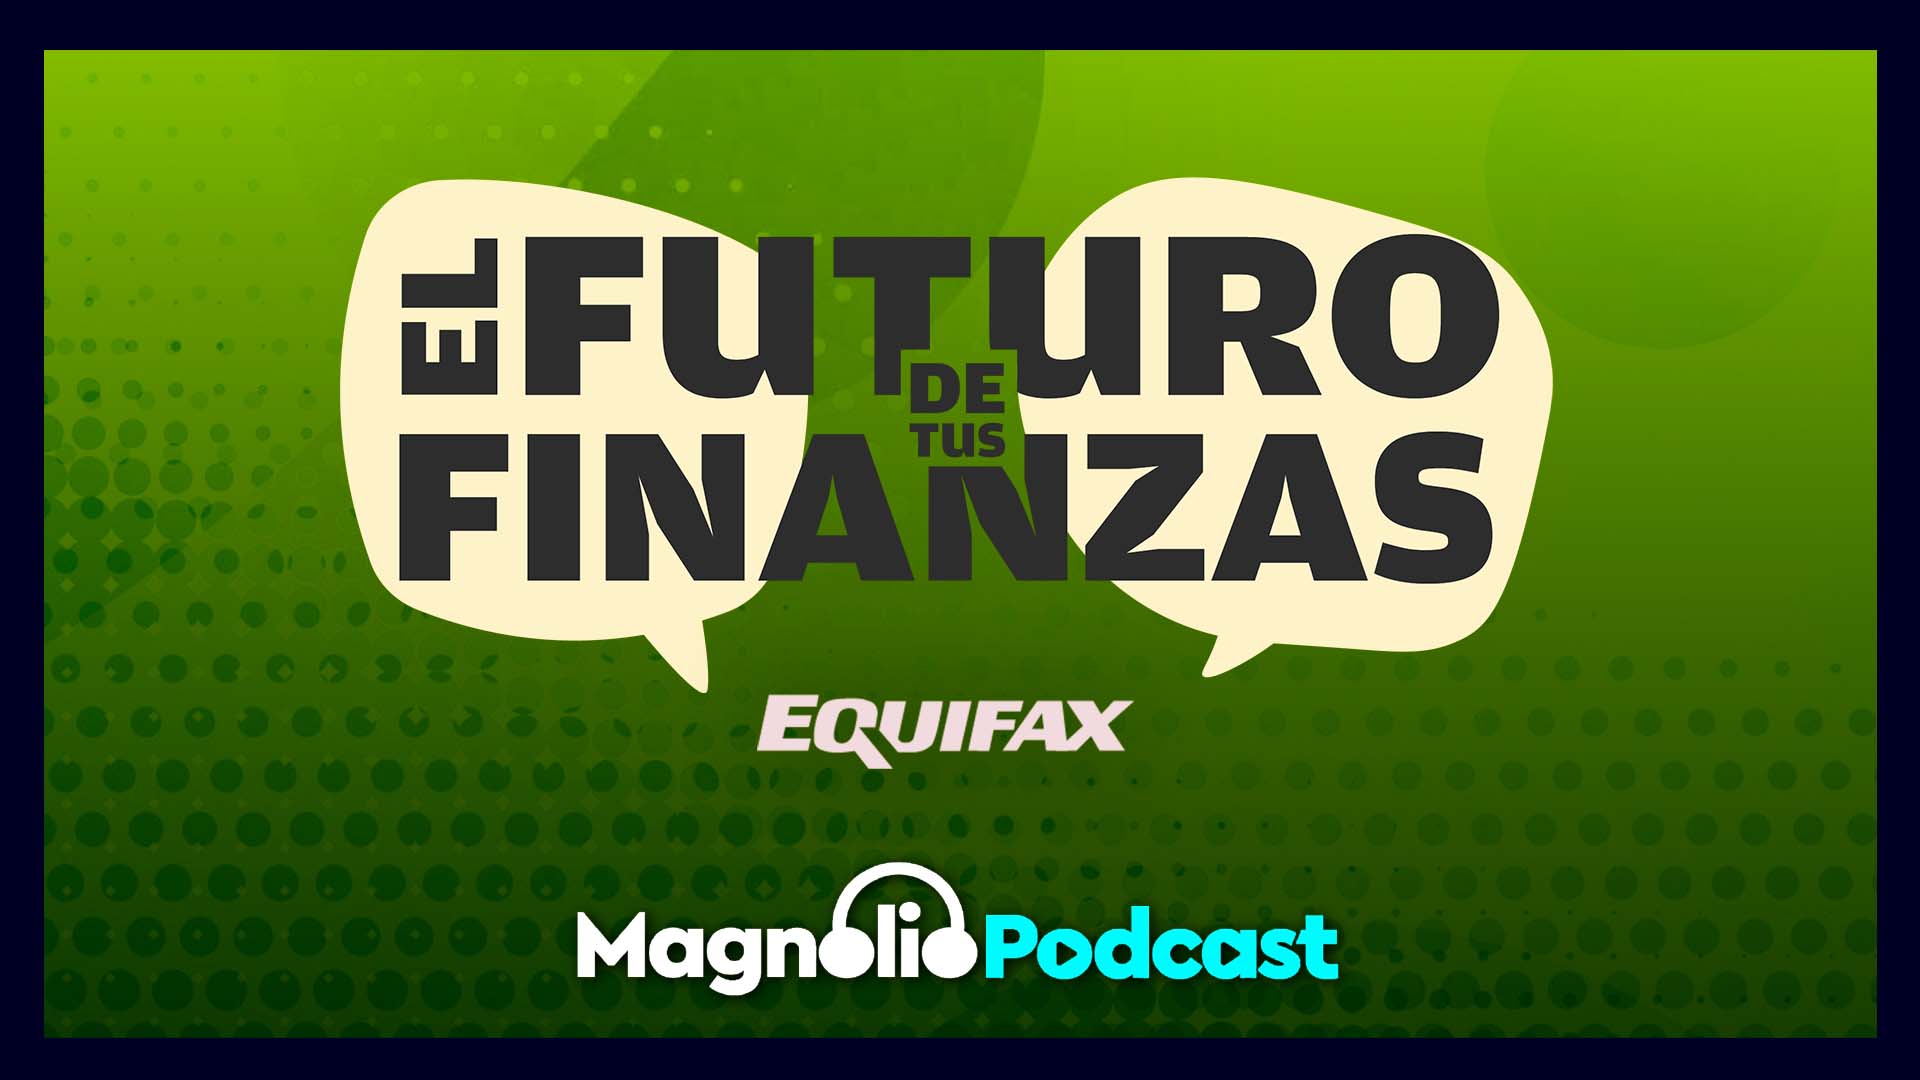 El Futuro de tus Finanzas - Yisela Moreira